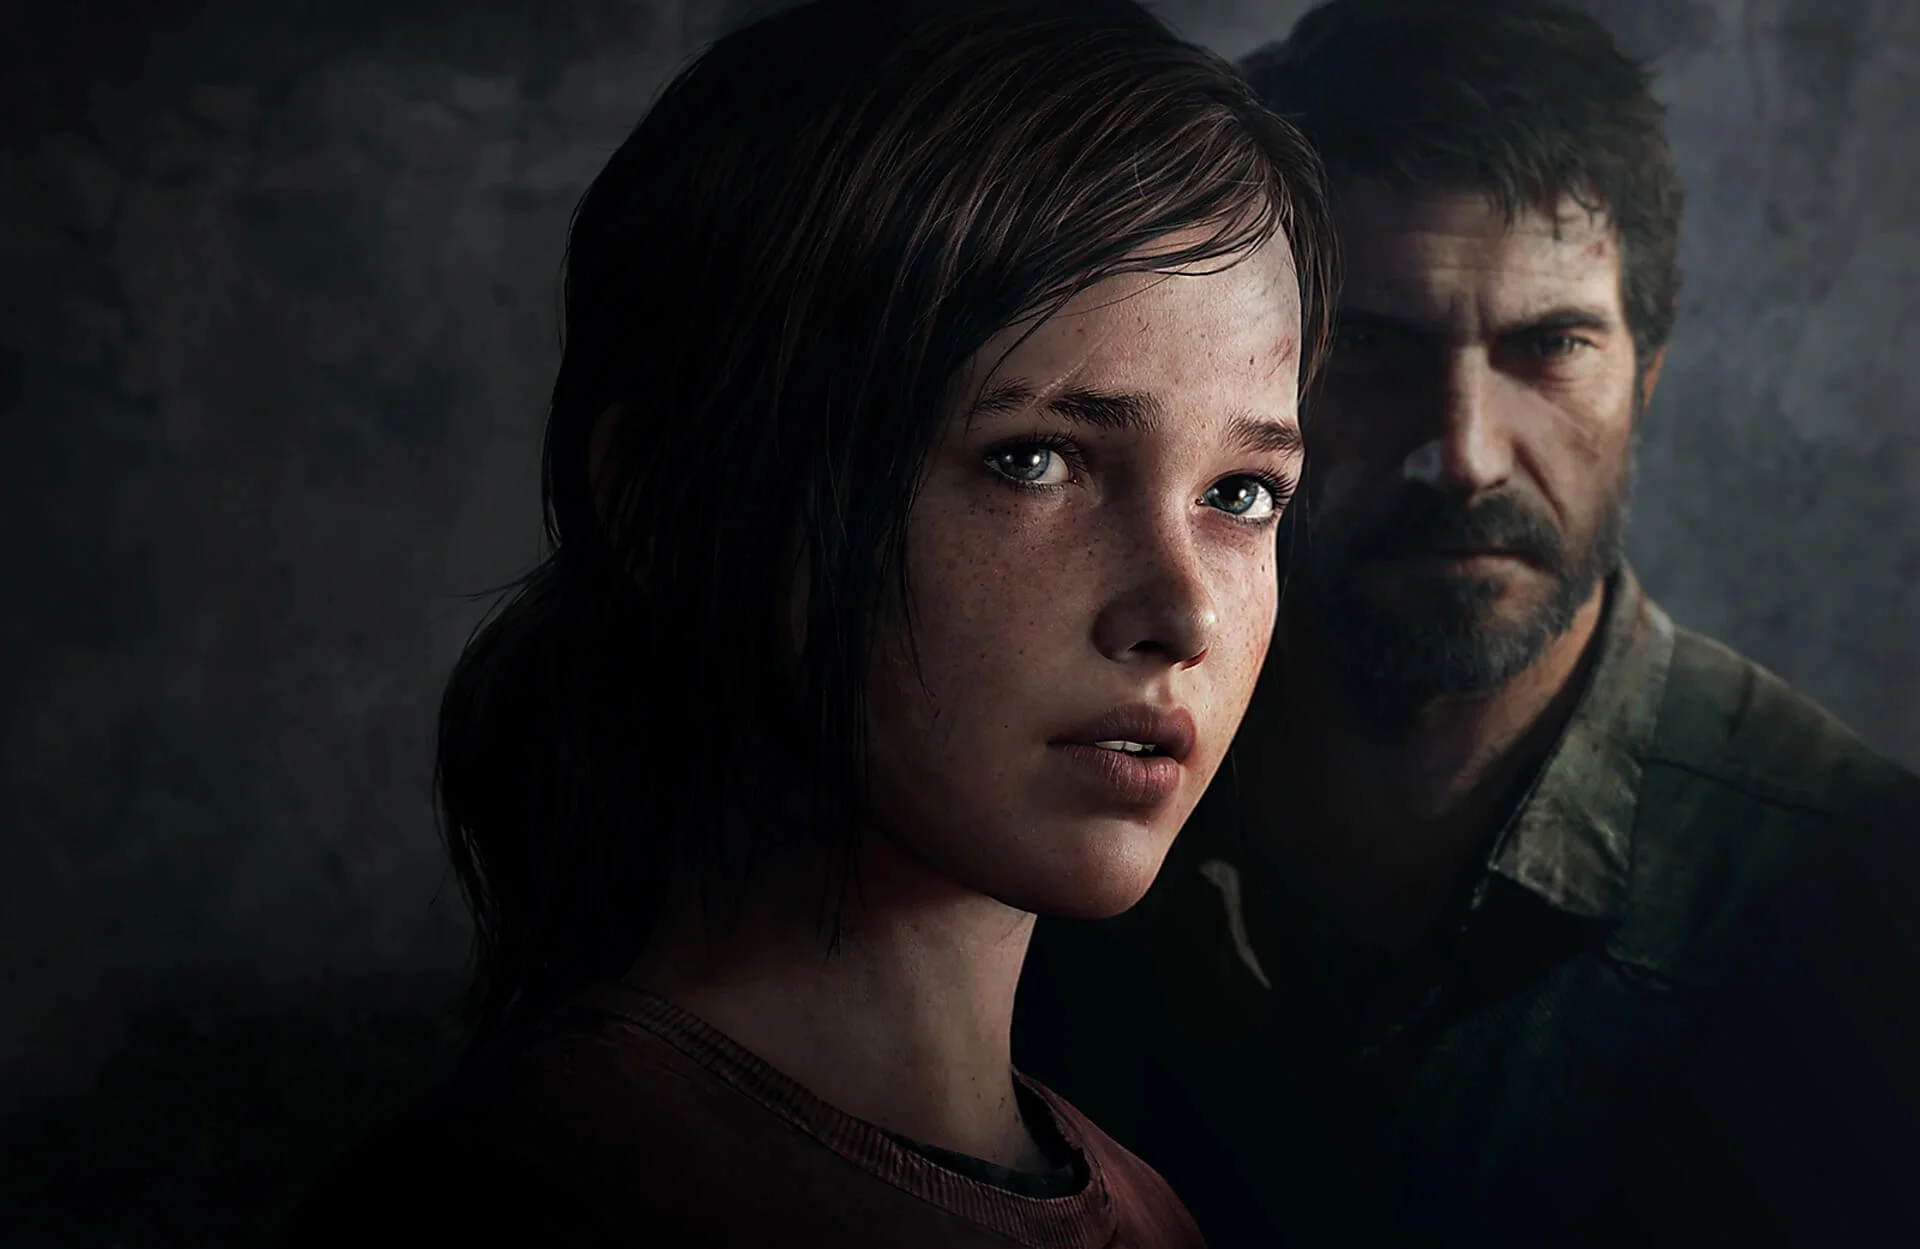 Az első részt adaptálja a The Last of Us, ám bizonyos epizódok nagyban eltérnek majd